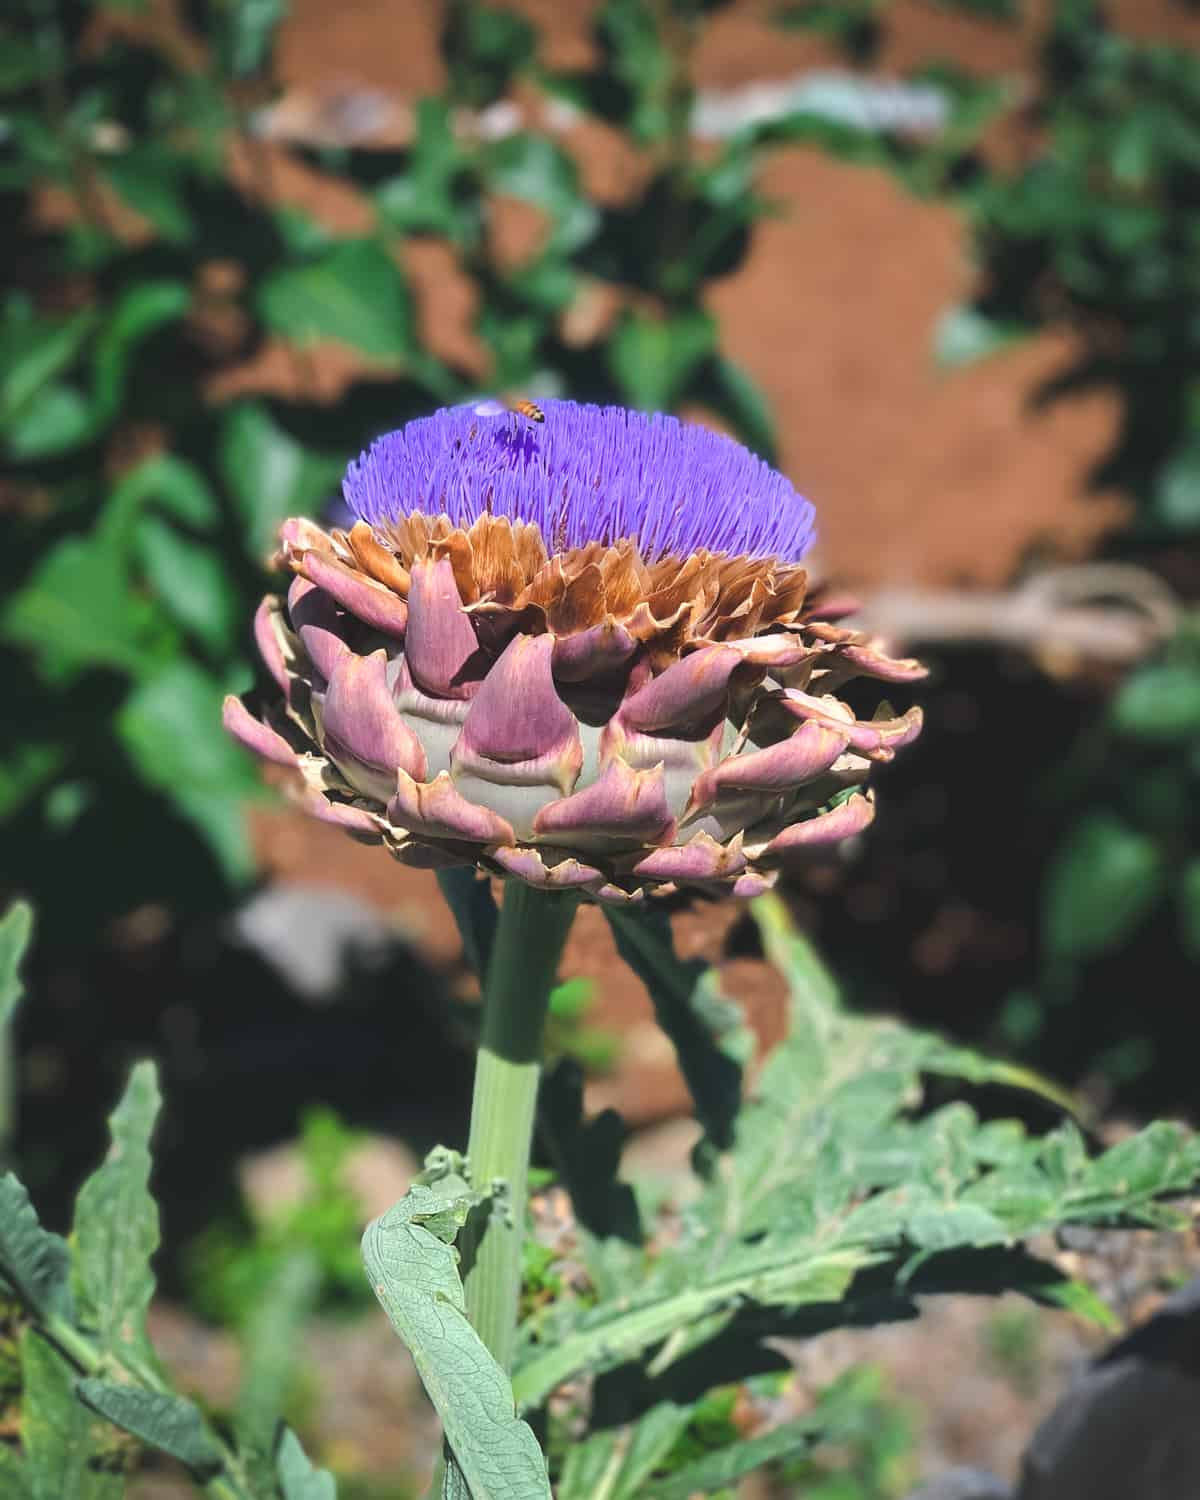 Artichoke flower, a purple spiky thistle bloom. 